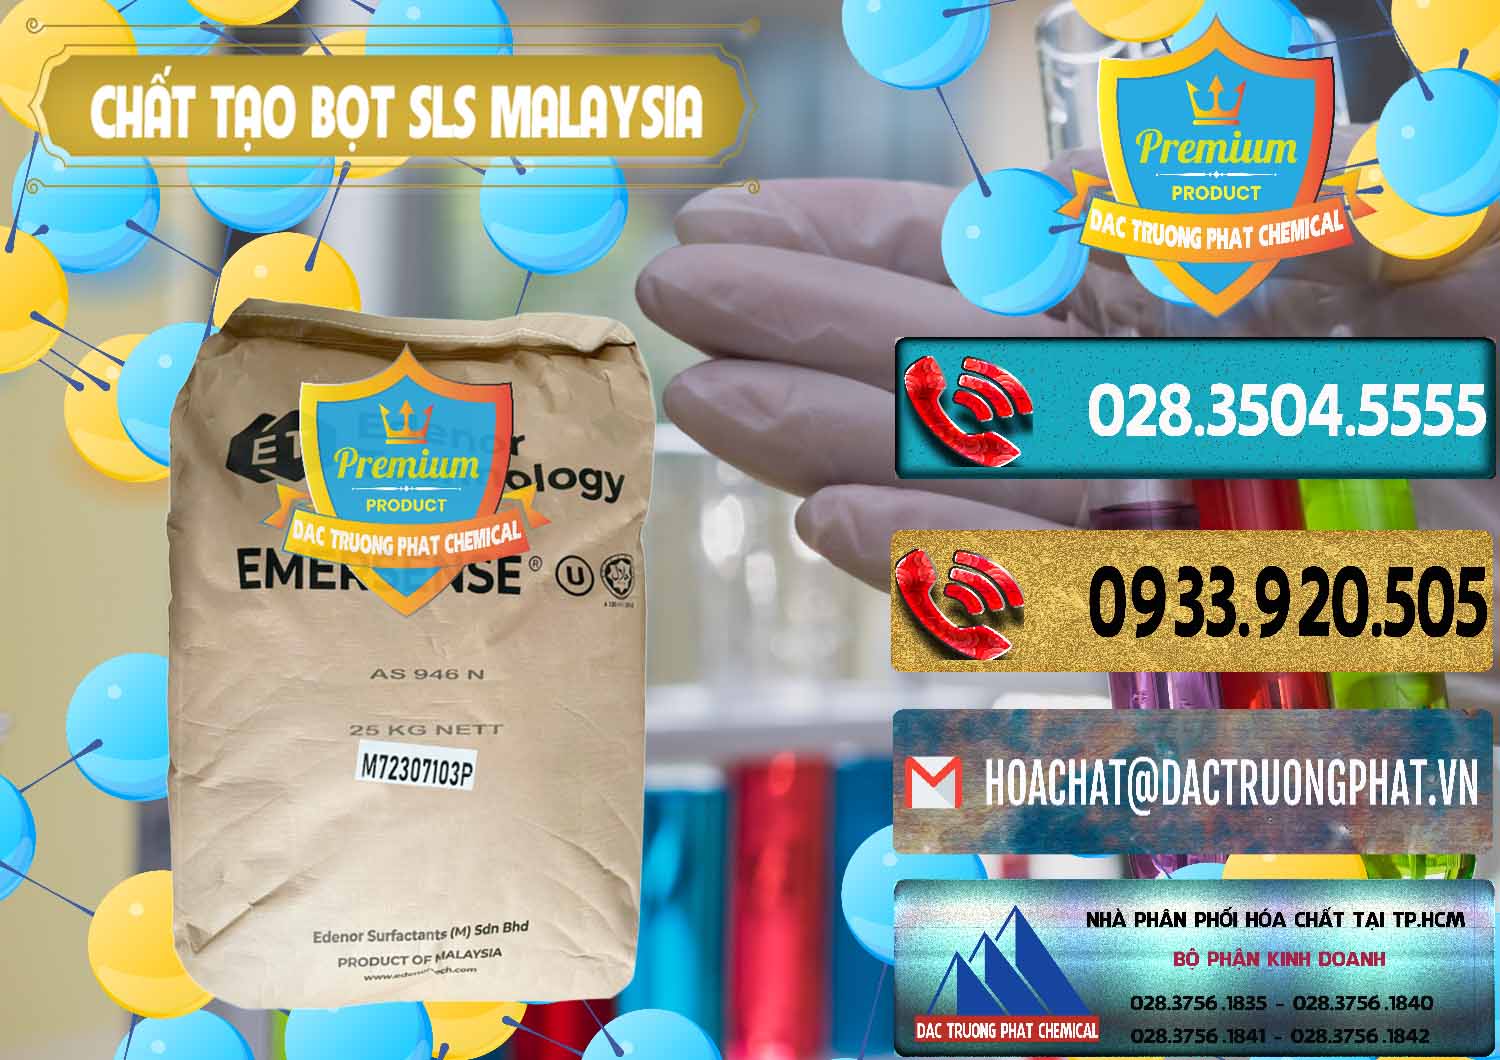 Cty chuyên bán - phân phối Chất Tạo Bọt SLS Emersense Mã Lai Malaysia - 0381 - Chuyên cung cấp ( bán ) hóa chất tại TP.HCM - hoachatdetnhuom.com